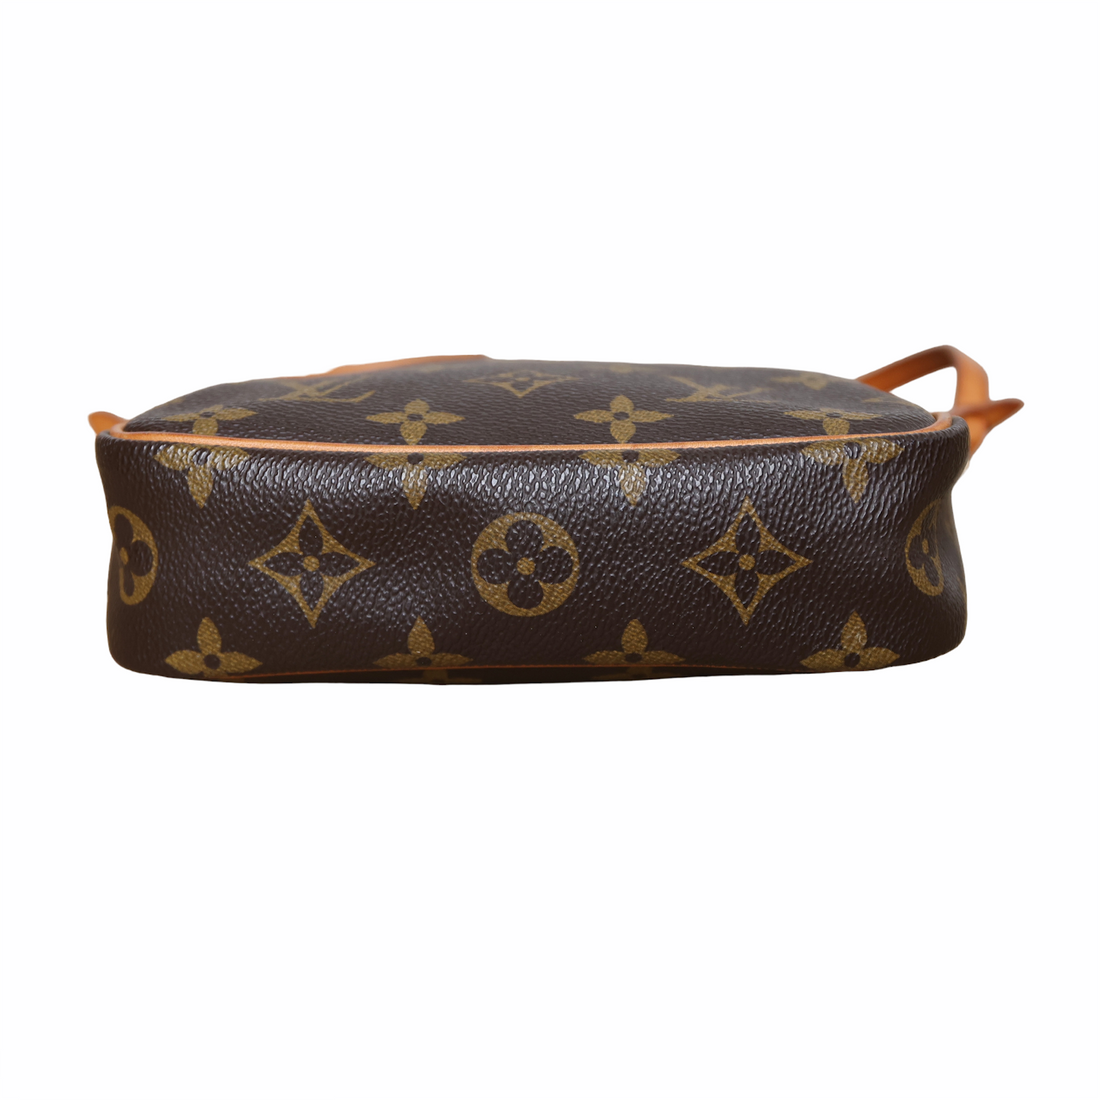 Louis Vuitton vintage pouchette with zip